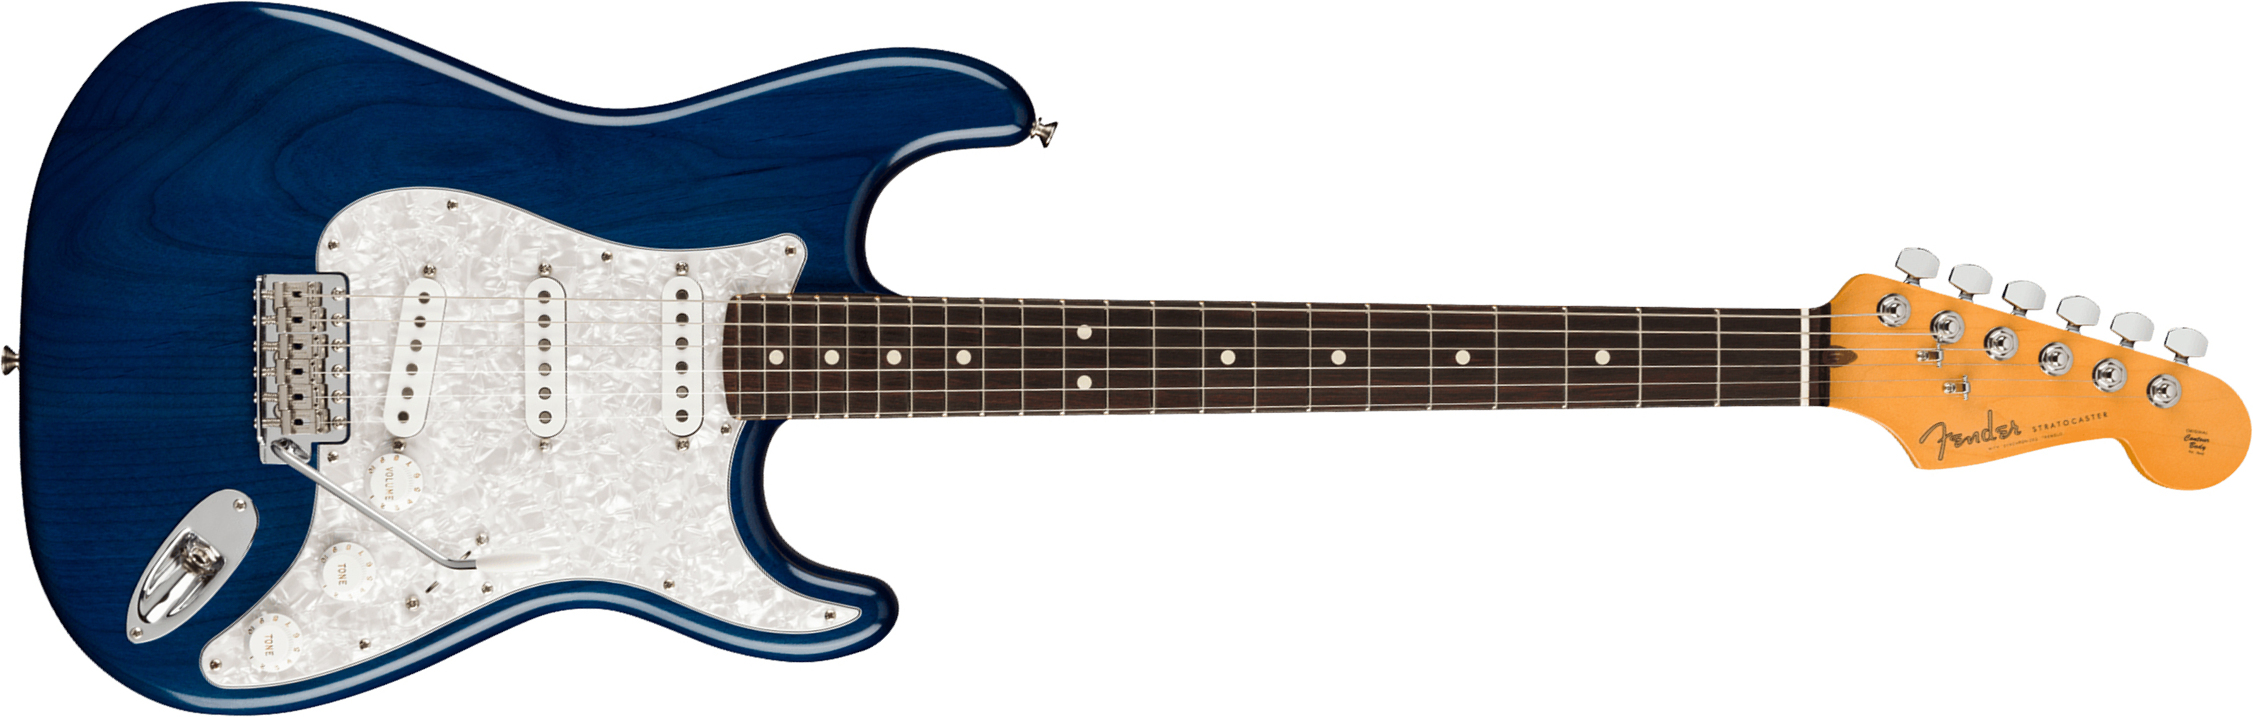 Fender Cory Wong Strat Signature Usa 3s Trem Rw - Sapphire Blue Transparent - Guitarra eléctrica con forma de str. - Main picture